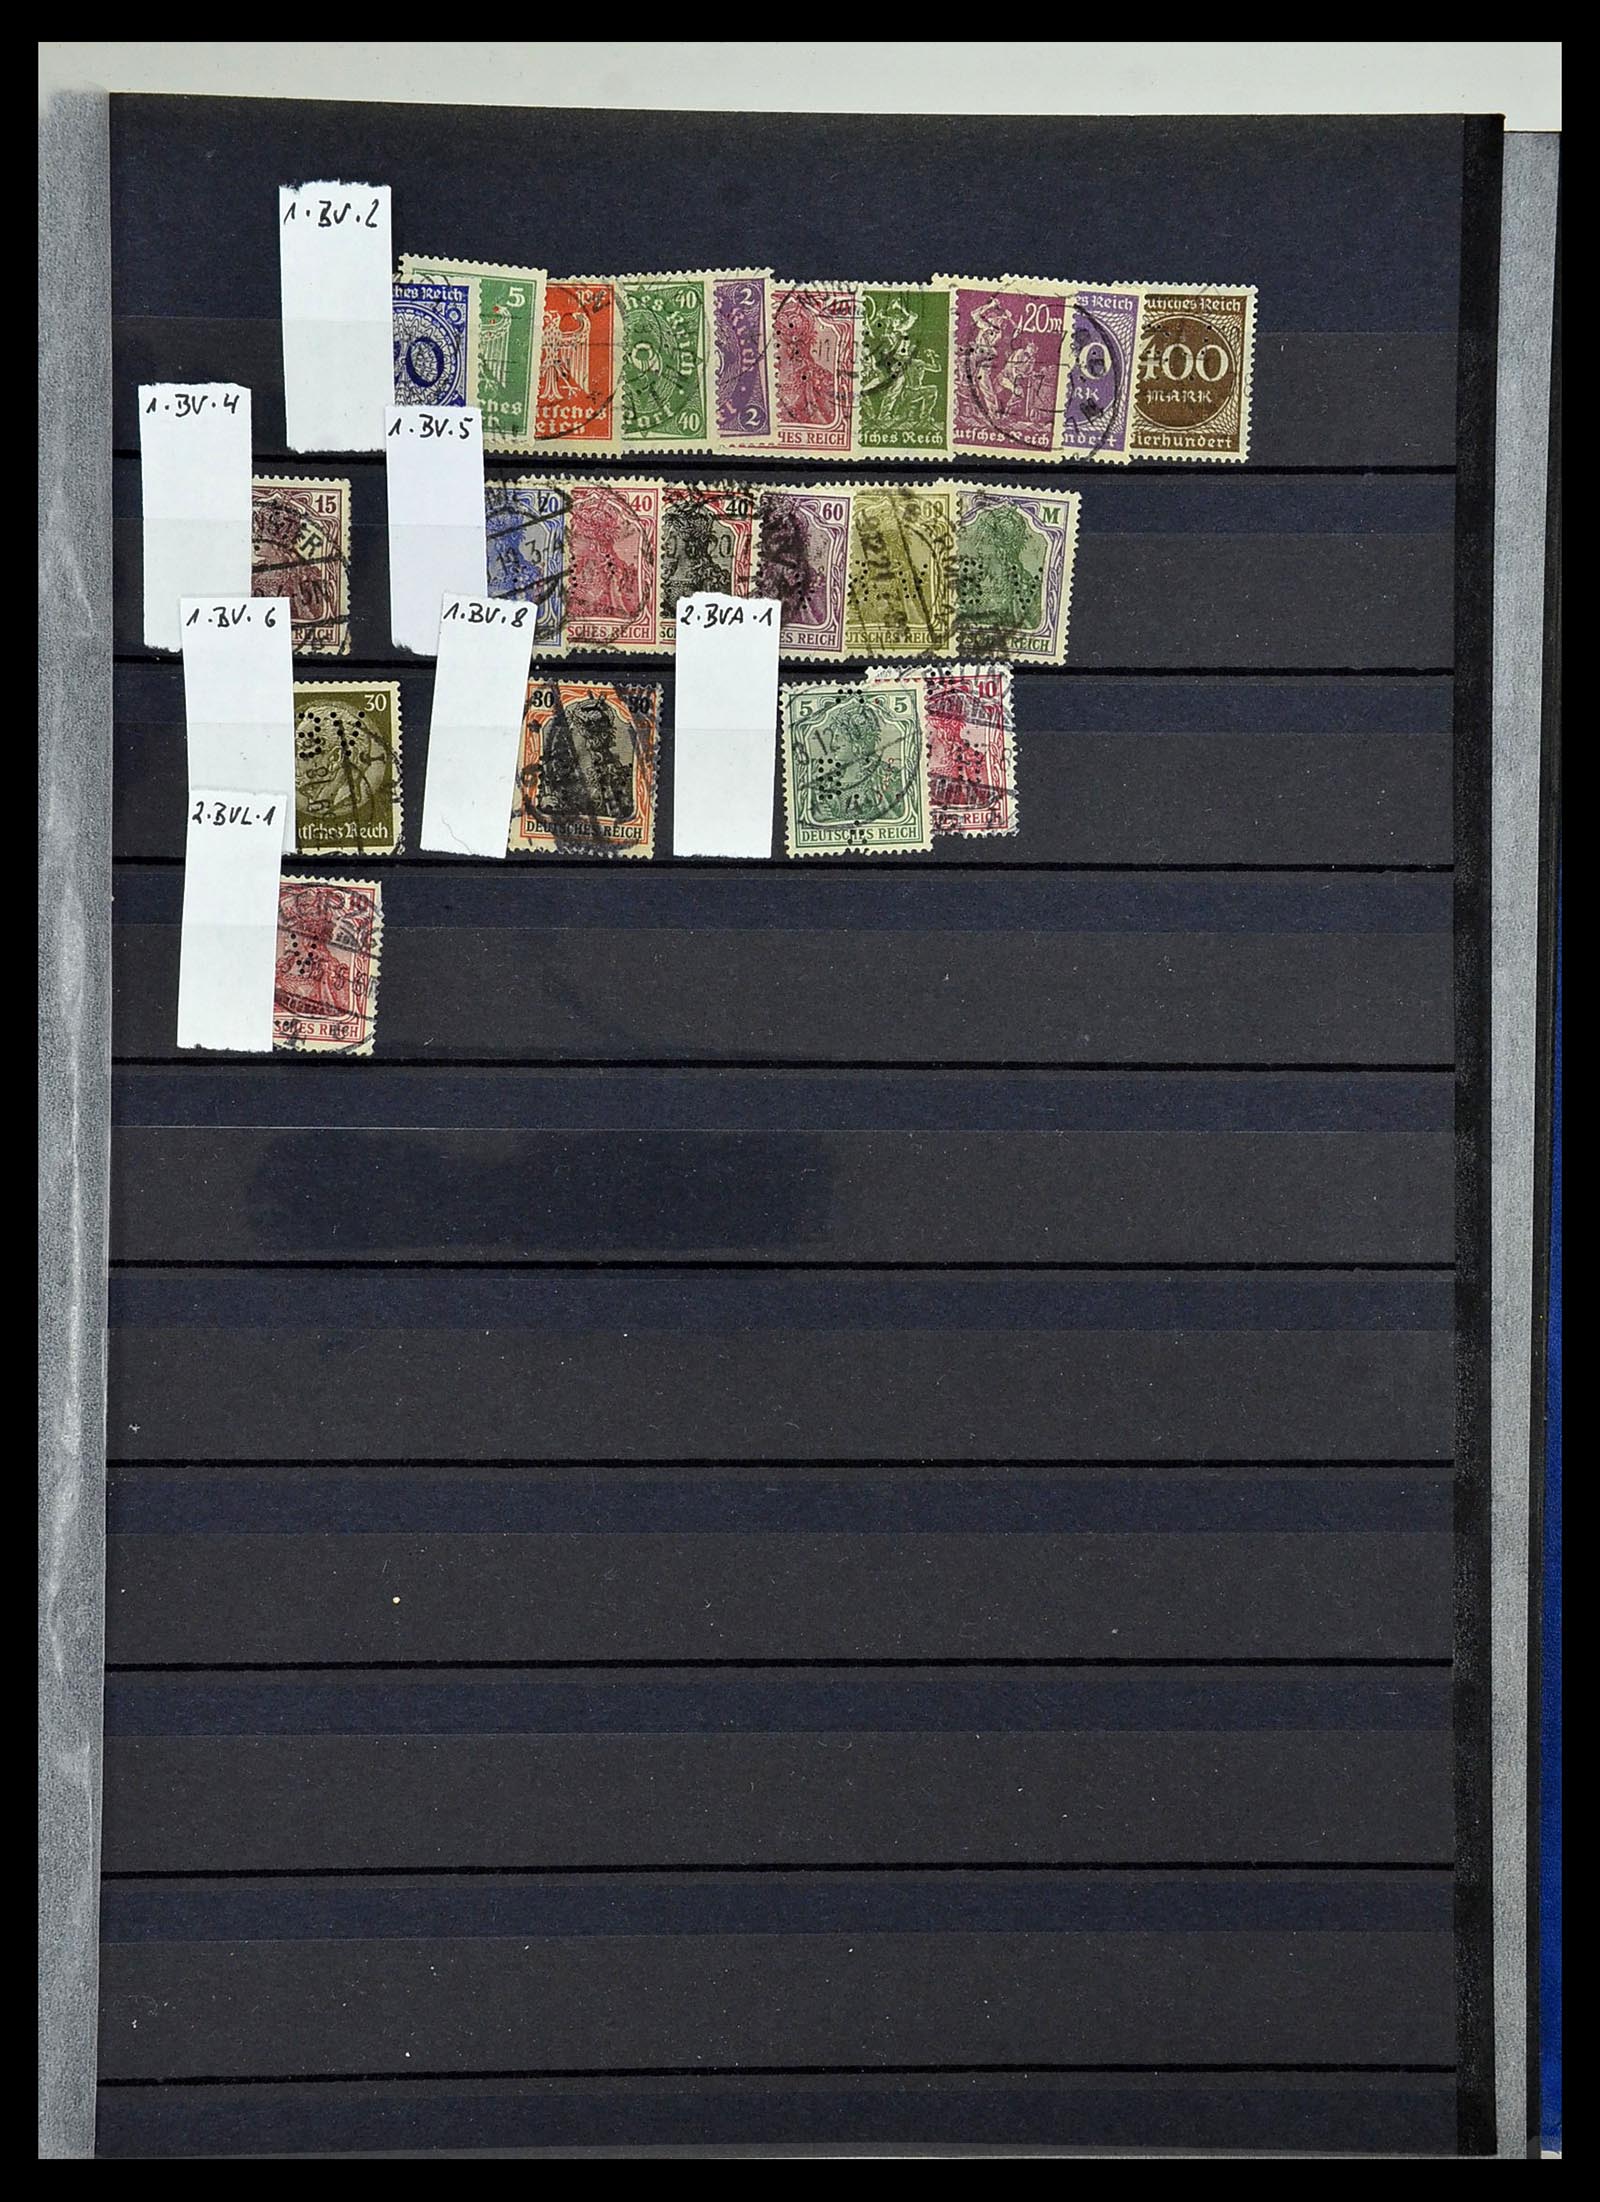 34432 072 - Stamp Collection 34432 German Reich perfins 1900-1933.